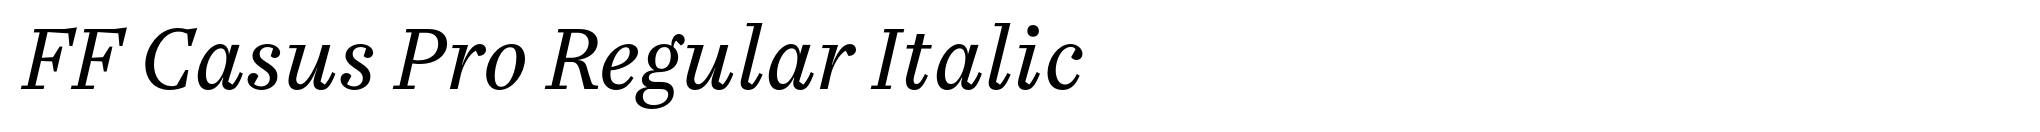 FF Casus Pro Regular Italic image